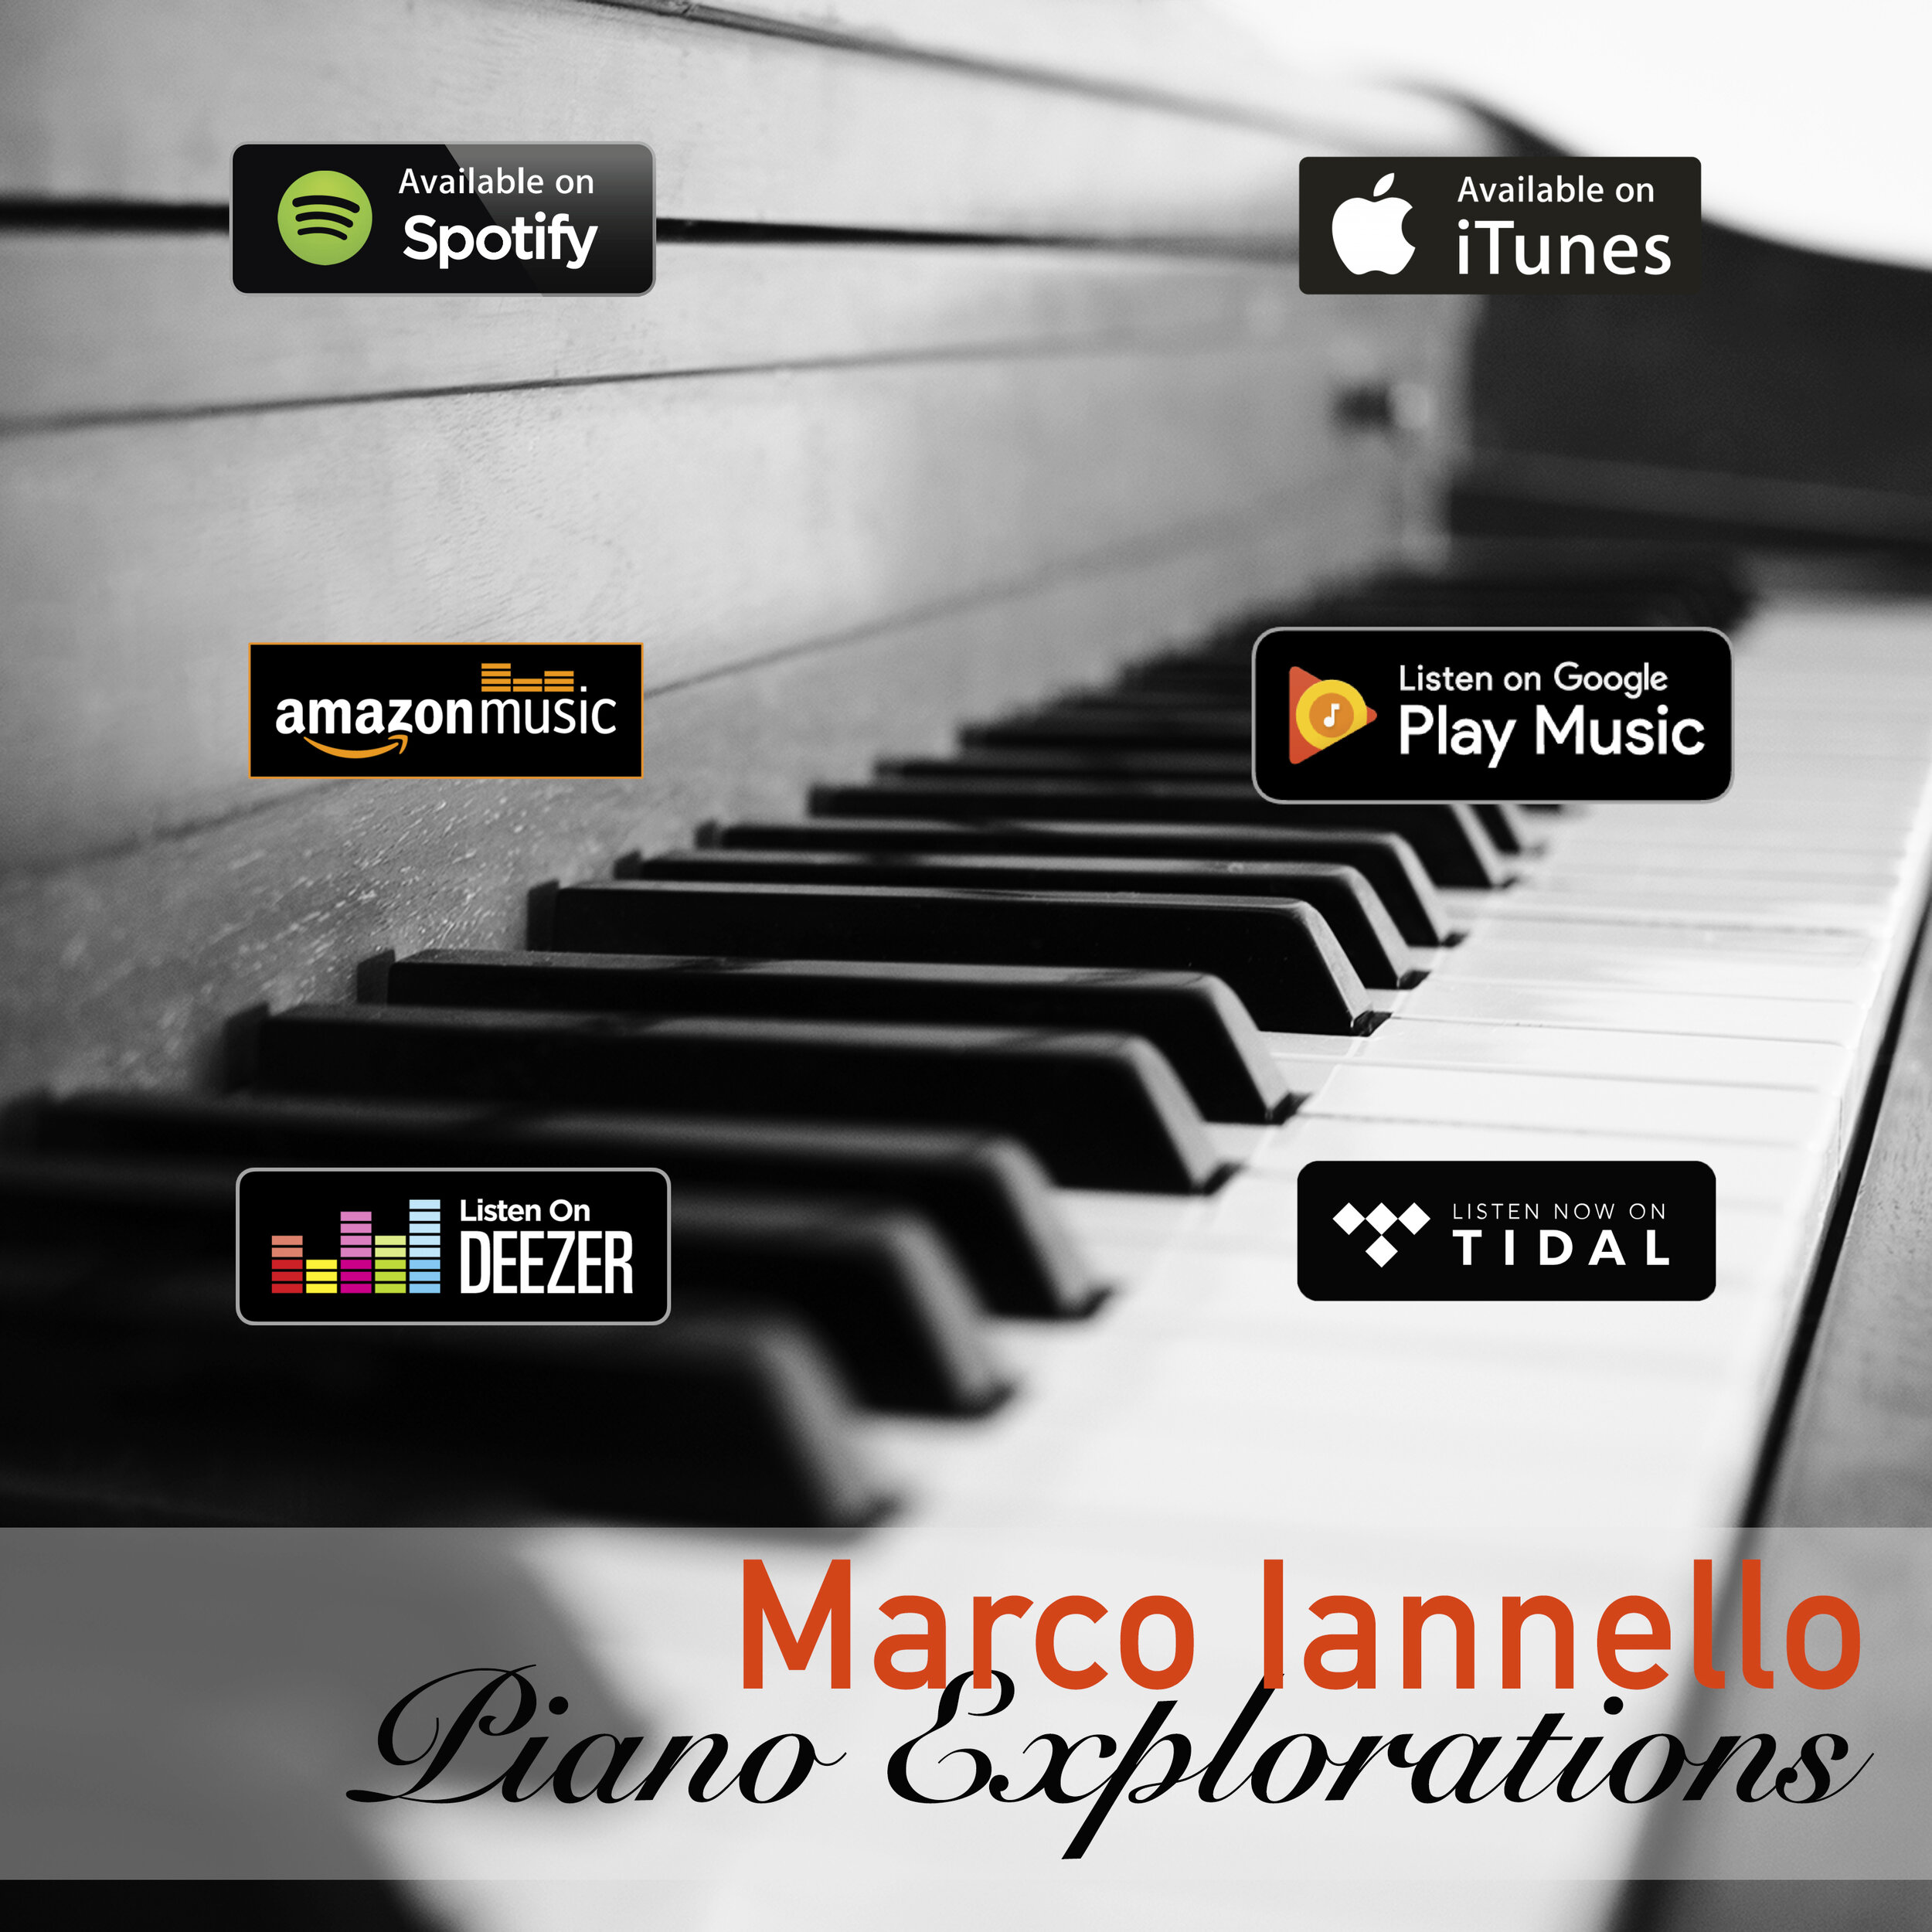 Piano Explorations badges.jpg